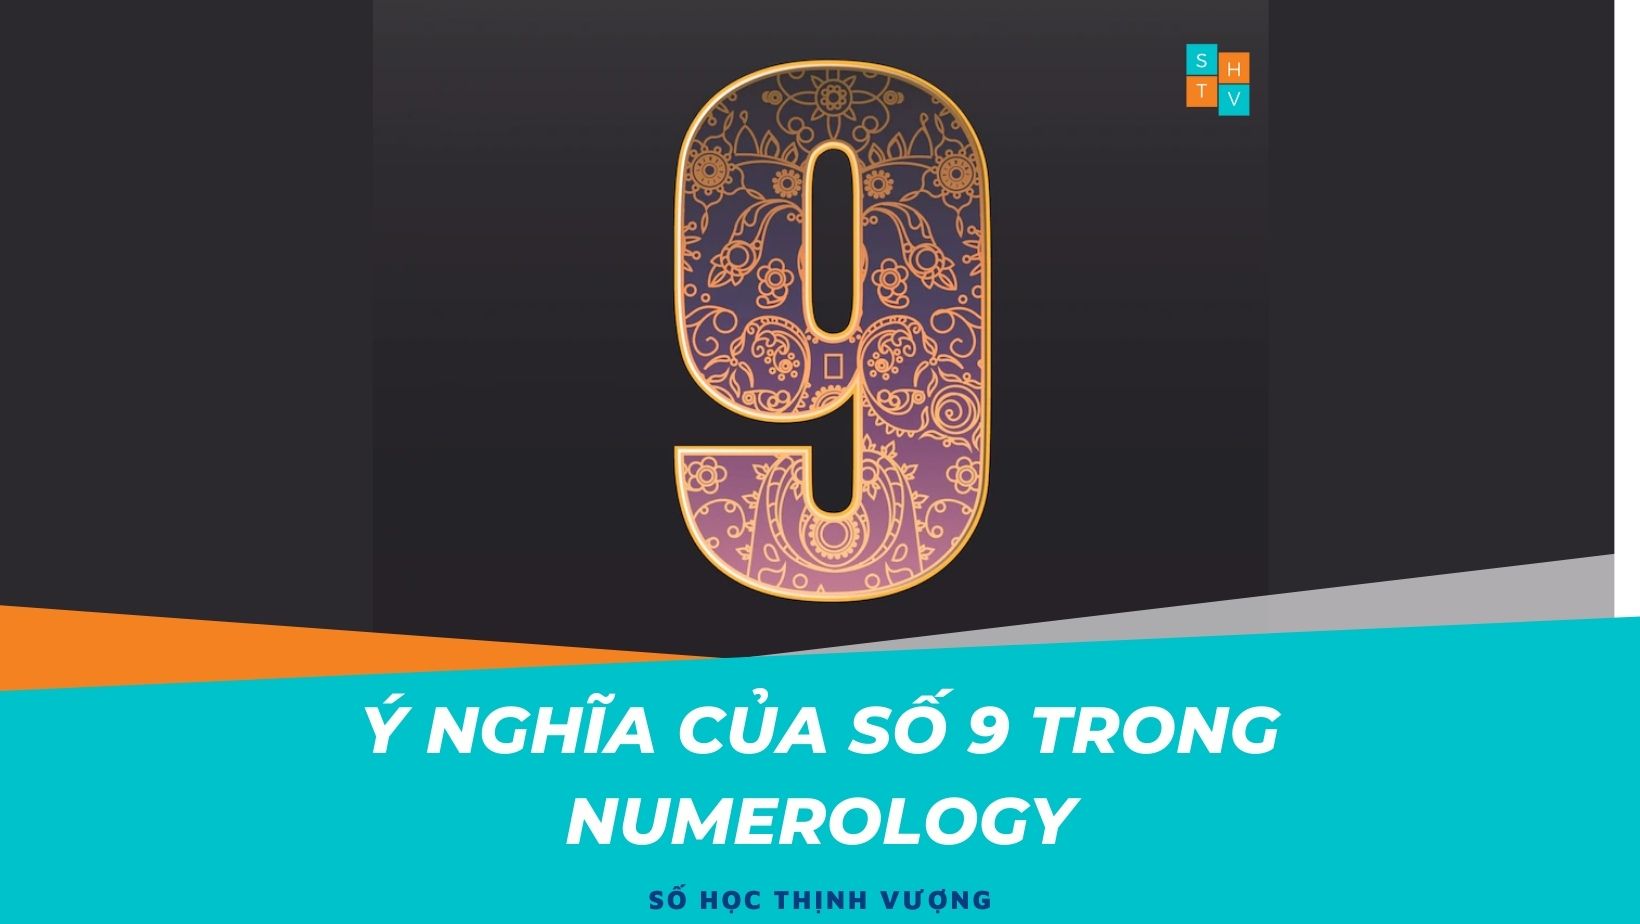 Ý nghĩa của số 9 trong Numerology, TEAM SỐ HỌC THỊNH VƯỢNG